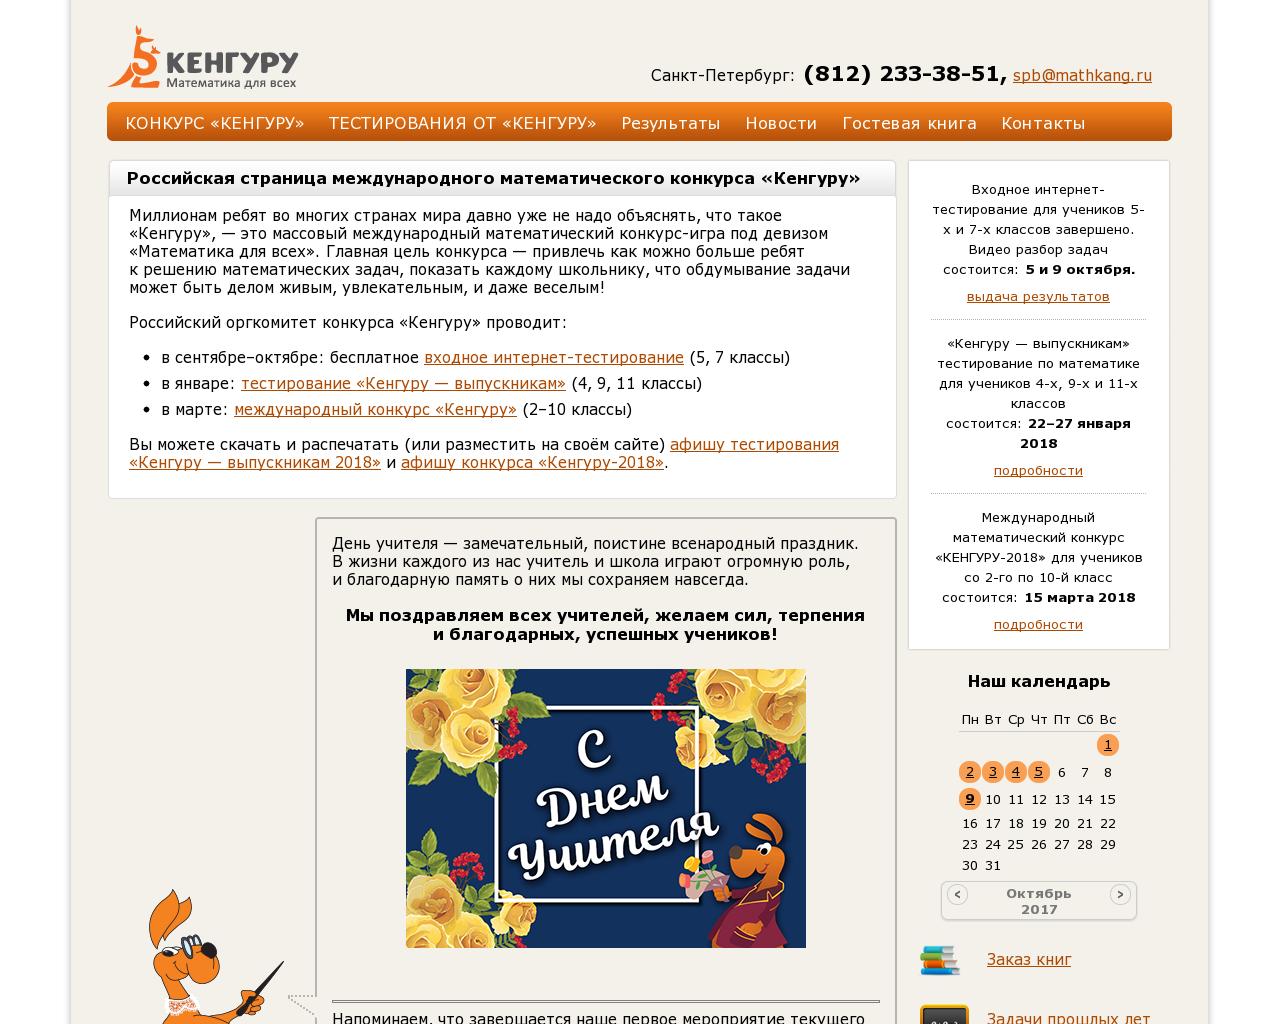 Изображение сайта mathkang.ru в разрешении 1280x1024